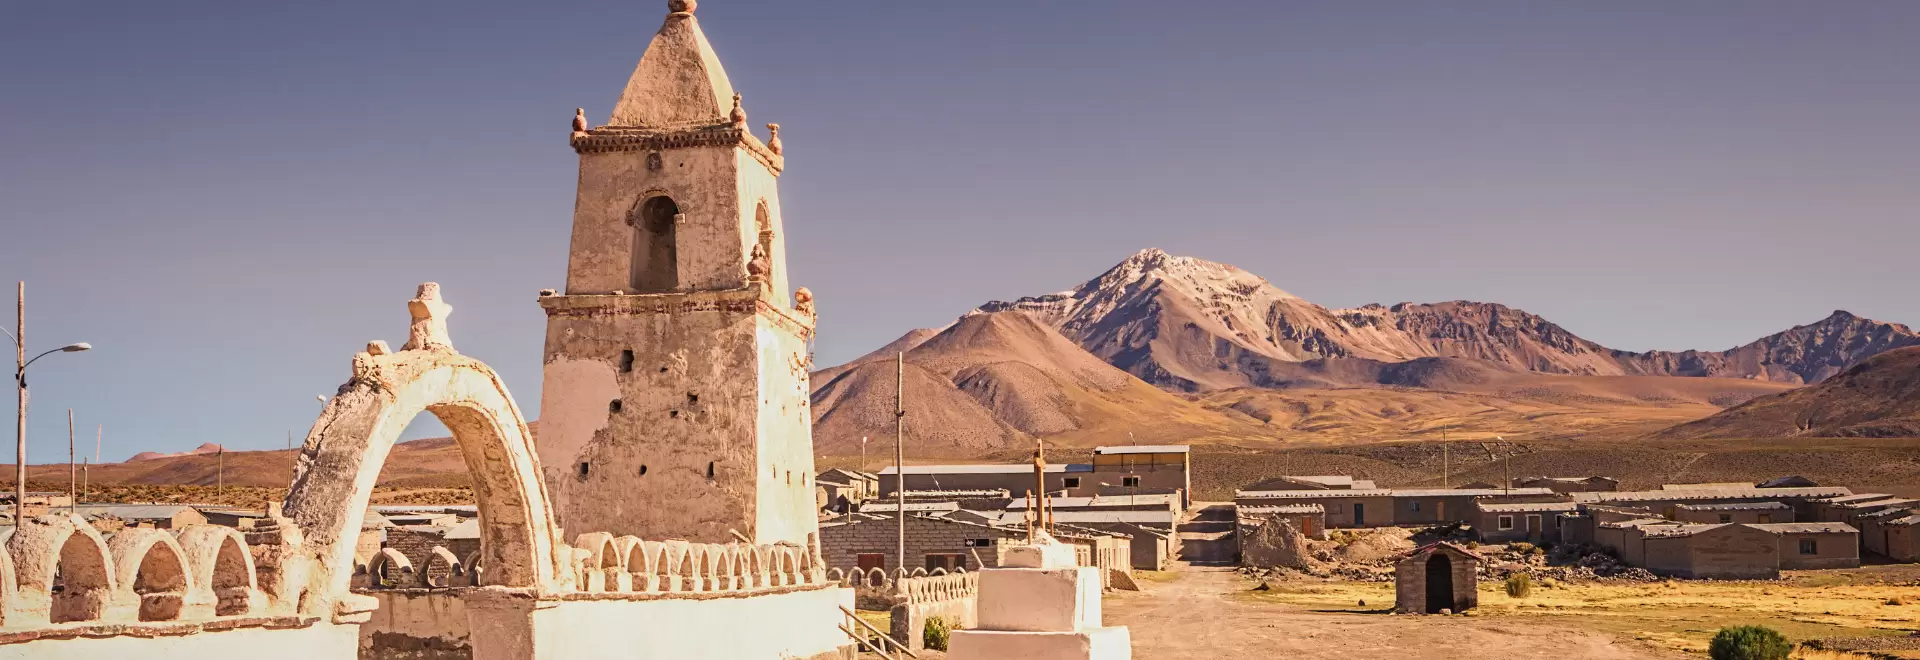 Altiplano: Chile – Bolivia